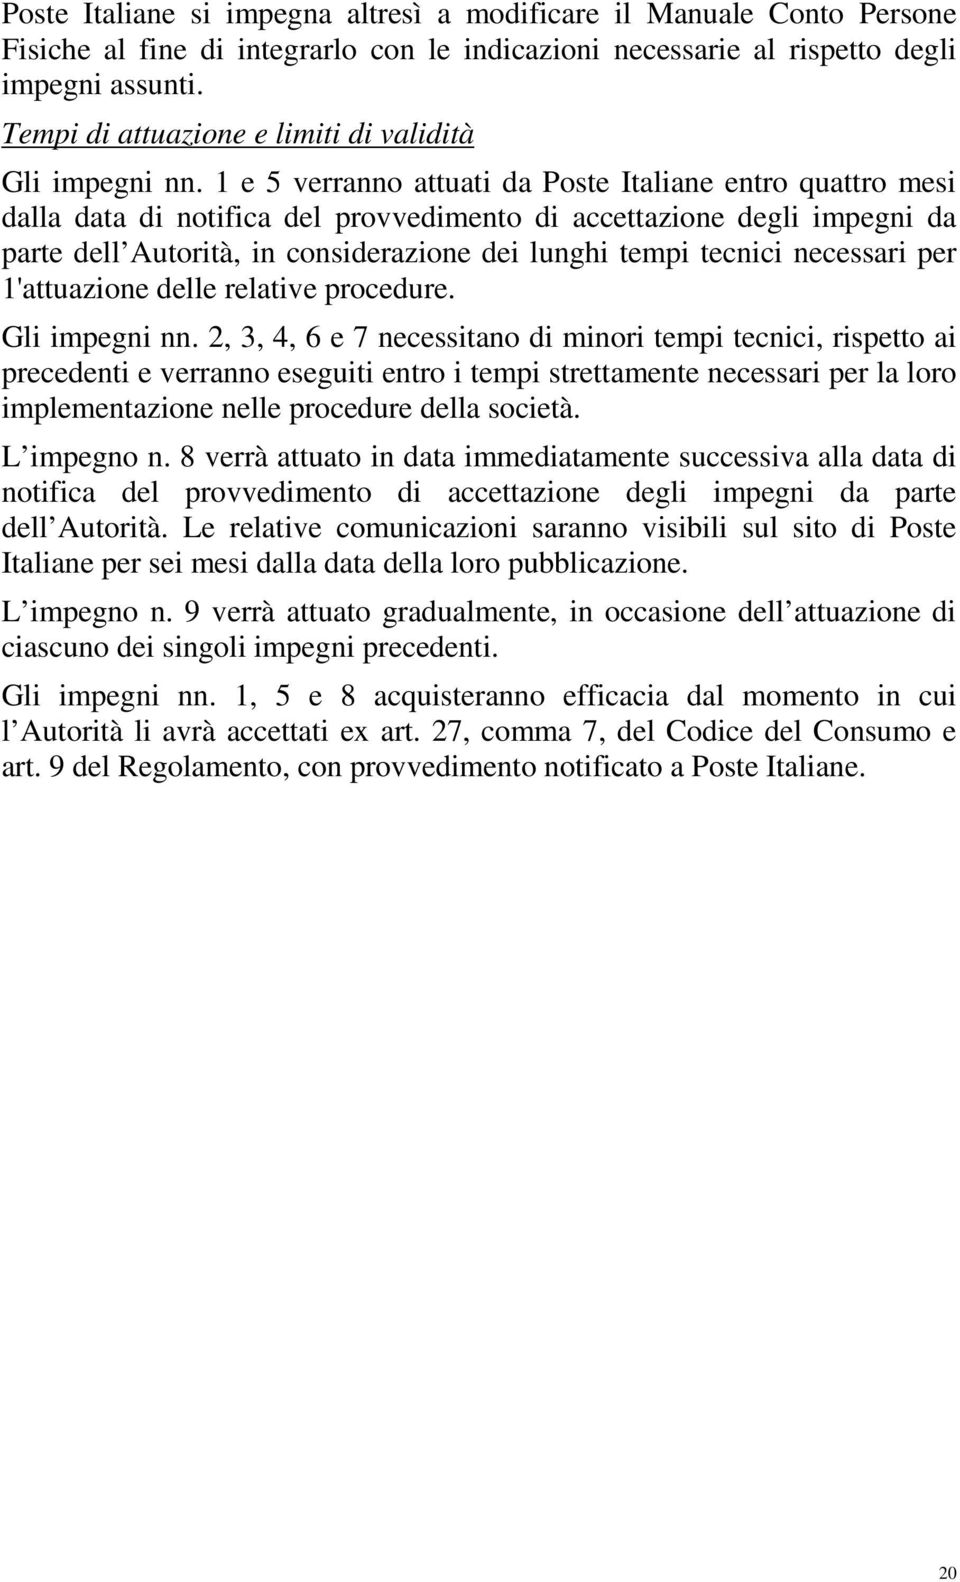 1 e 5 verranno attuati da Poste Italiane entro quattro mesi dalla data di notifica del provvedimento di accettazione degli impegni da parte dell Autorità, in considerazione dei lunghi tempi tecnici